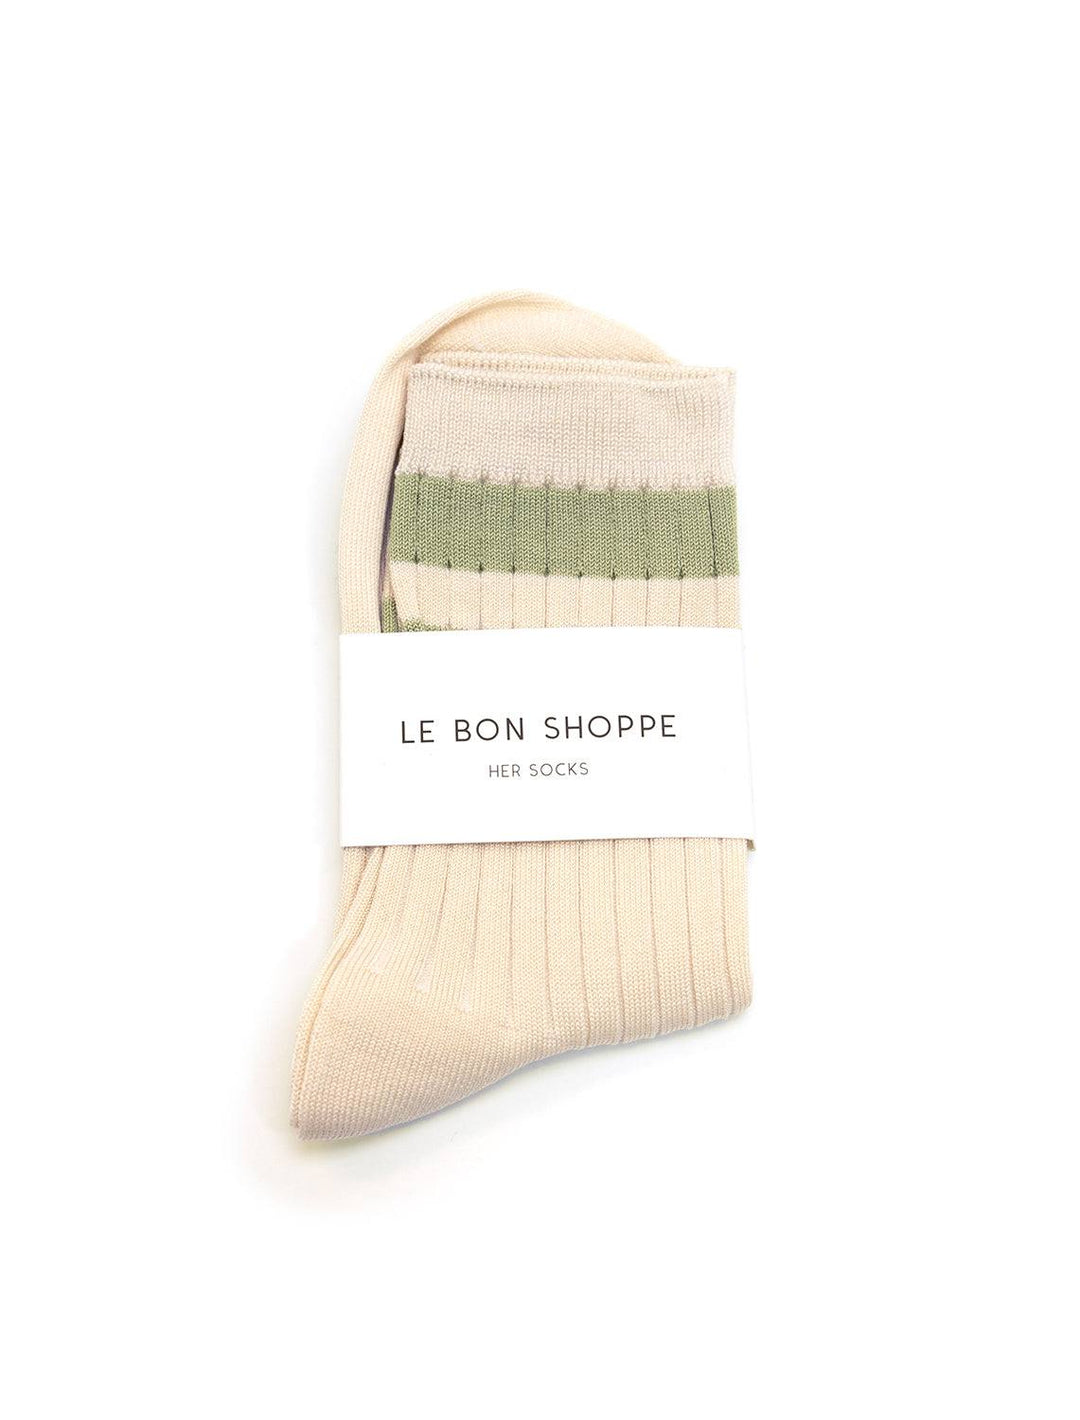 Le Bon Shoppe's her socks varsity in guacamole.